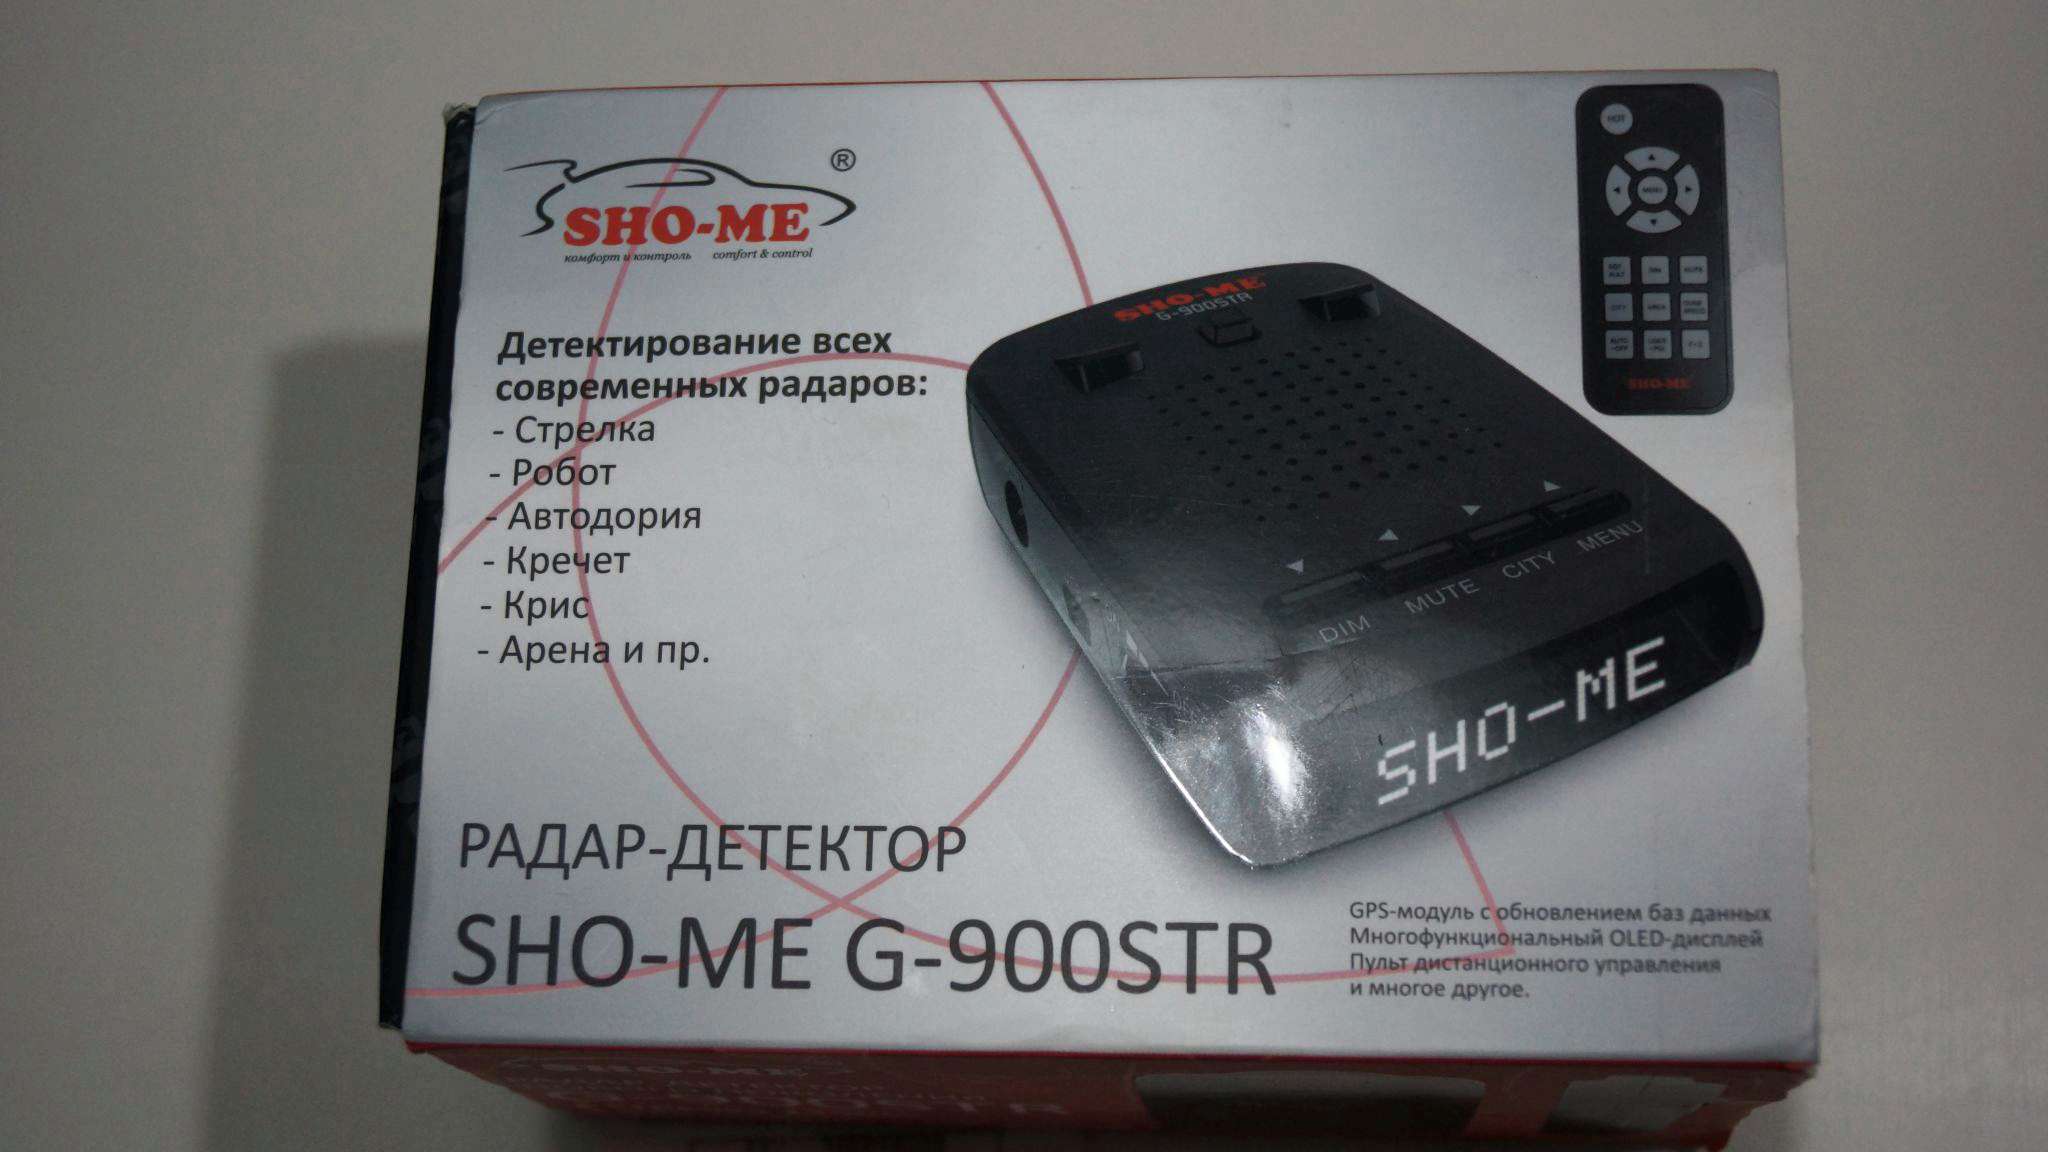 Sho-me g-900 Str. Sho me g900 Str дисплей 1. Sho me 900str. Sho me g900 Str default. Настроить sho me